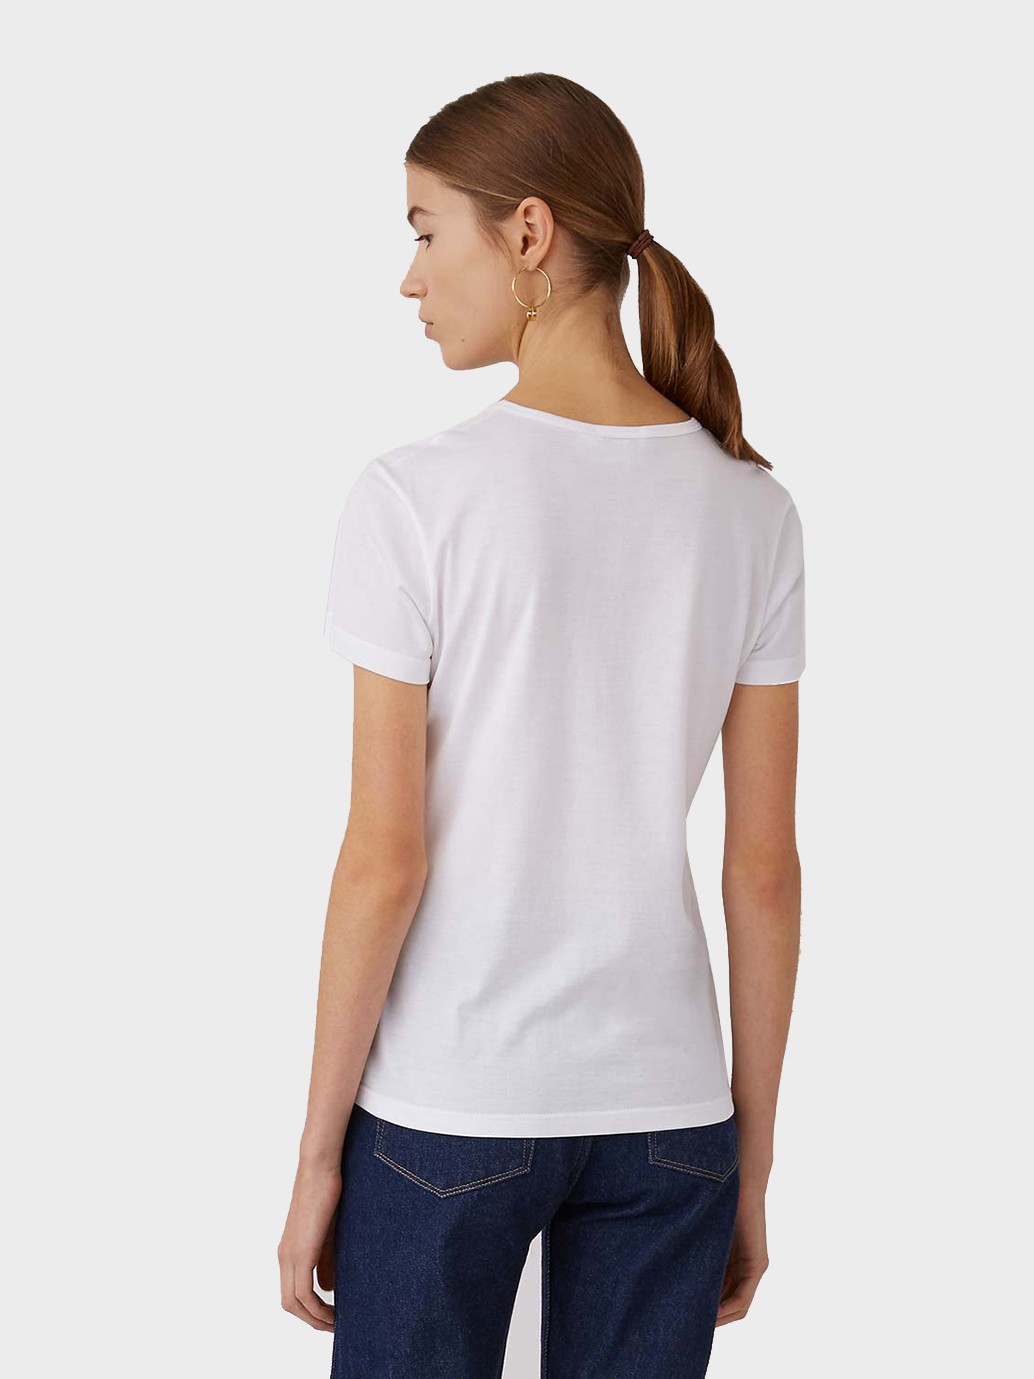 Sunspel Short Sleeve Classic Crew Neck T-Shirt in White